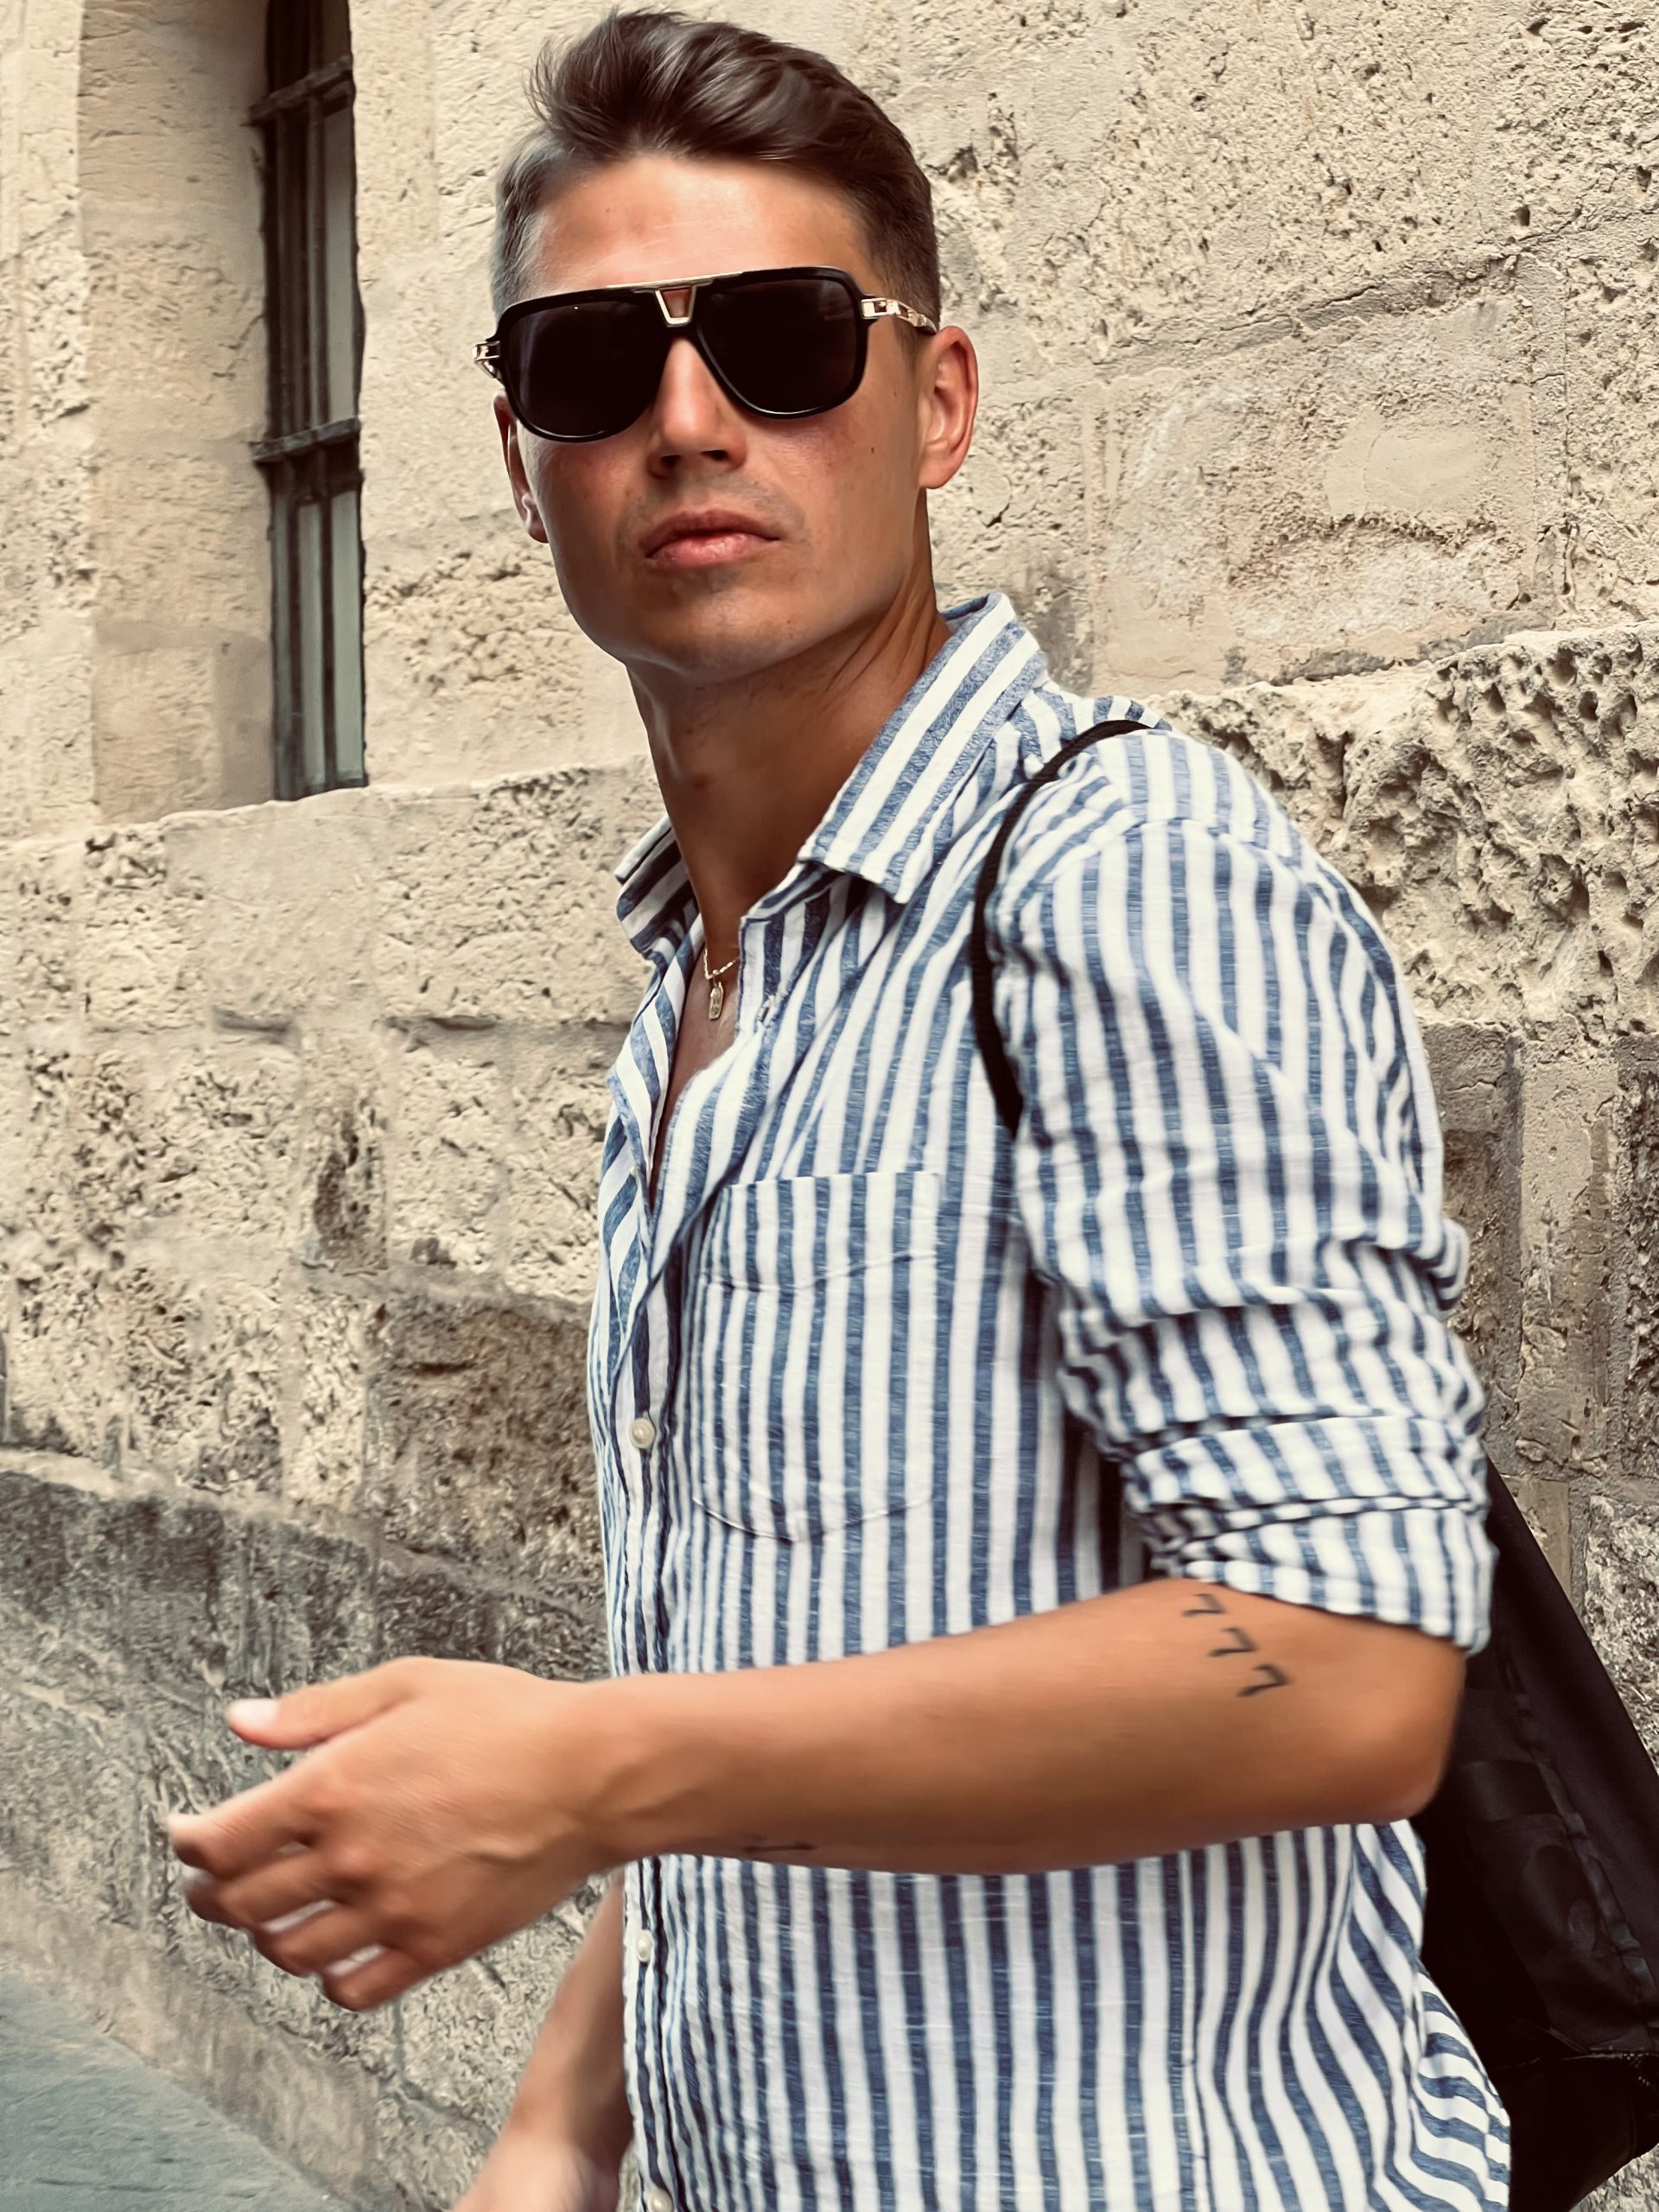 Zdjęcie Flipa, dwudziesto kilku letniego chłopaka. Filip ma na sobie letnią koszulę w paski, plecak i okulary przeciwsłoneczne. Jest opalony. W tle widać ścianę budynku z jasnego piaskowca, który przypomina włoską architekturę.